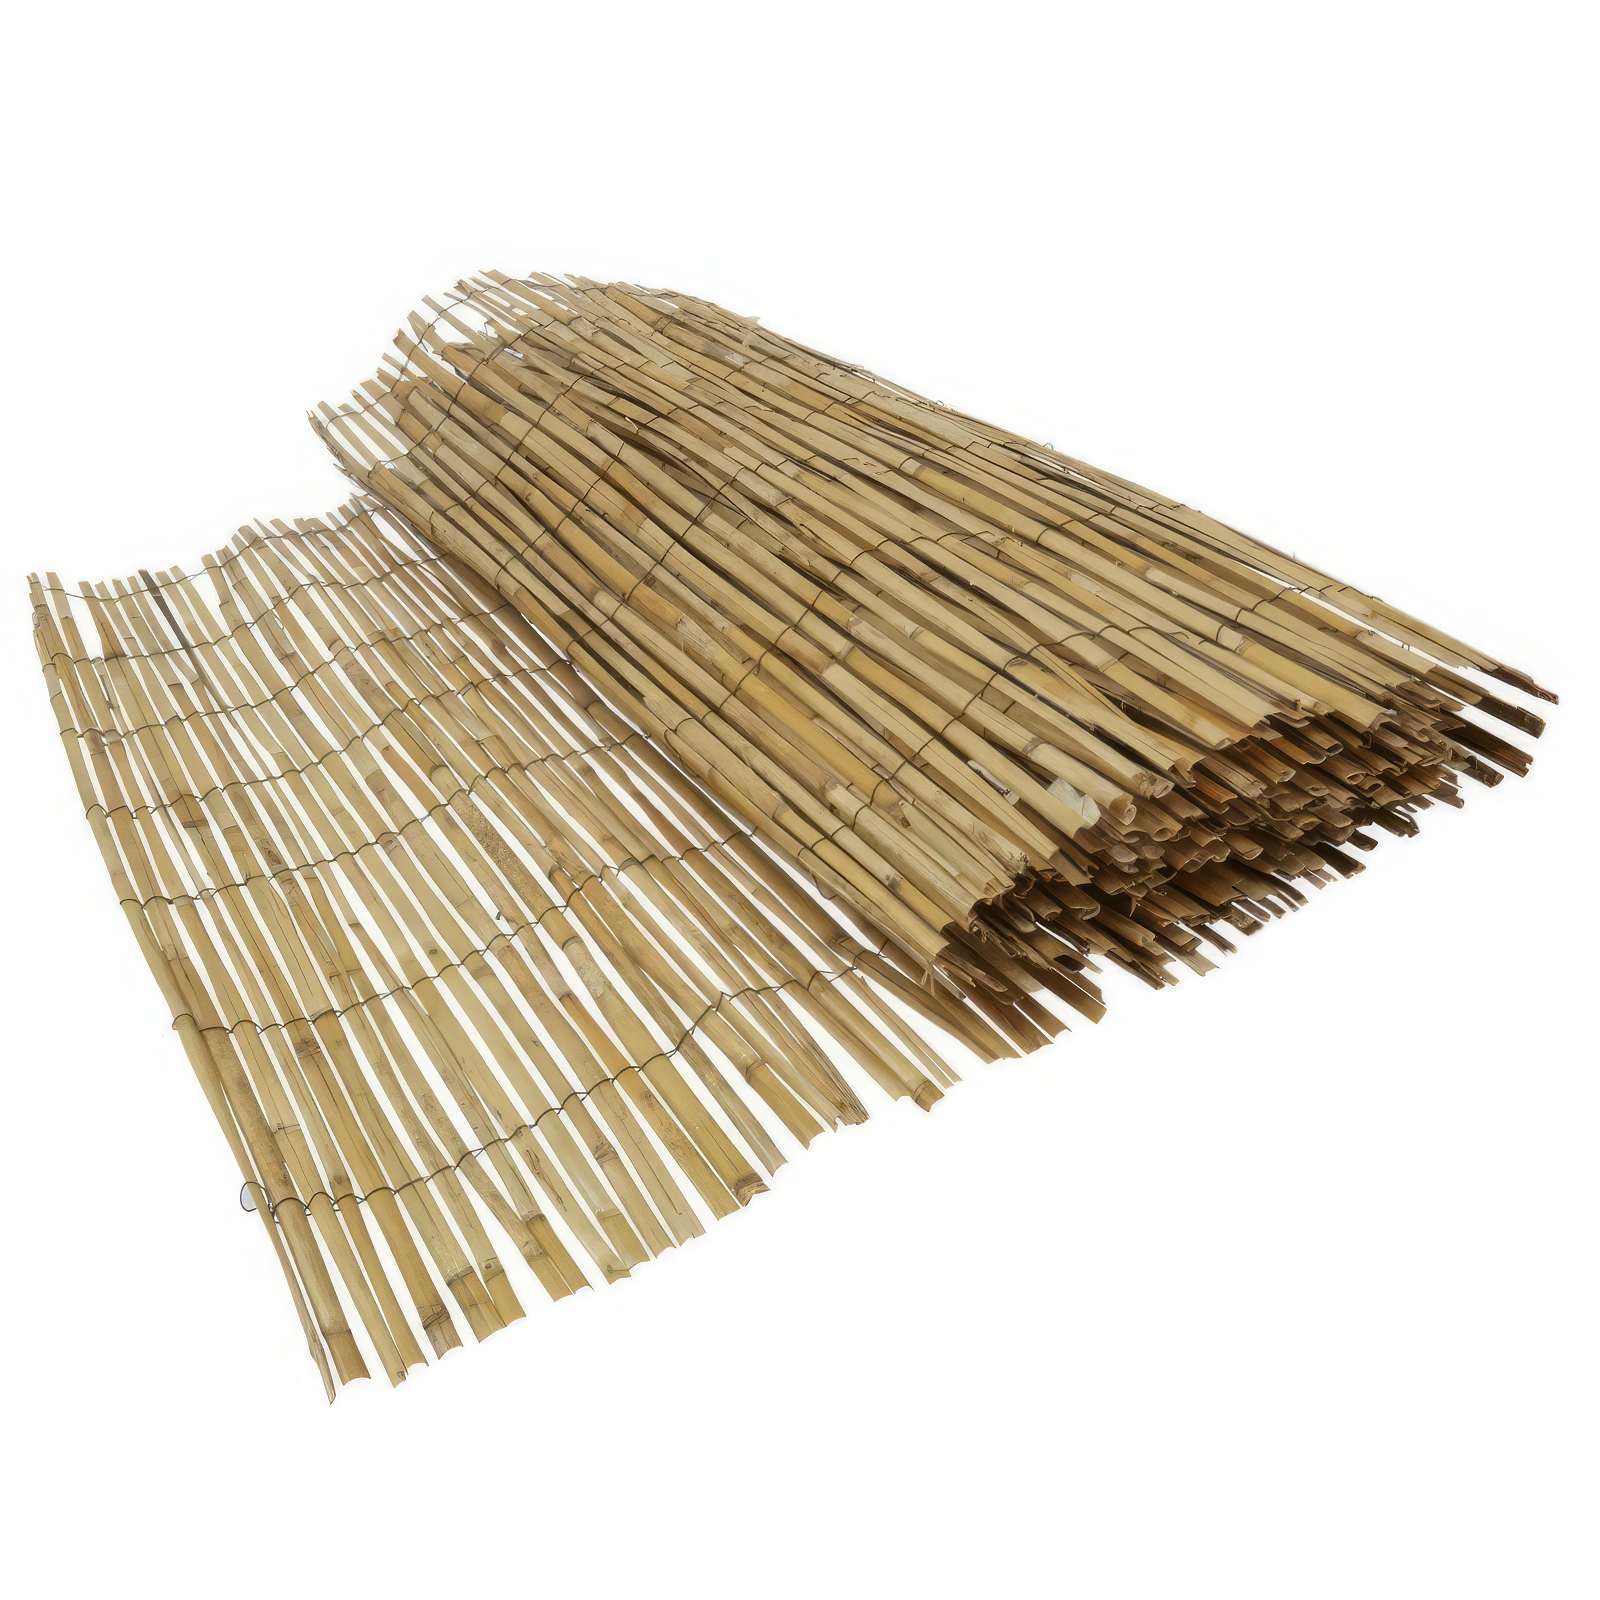 NATURE Ecran brise vue bambou naturel 100x180 cm pas cher 